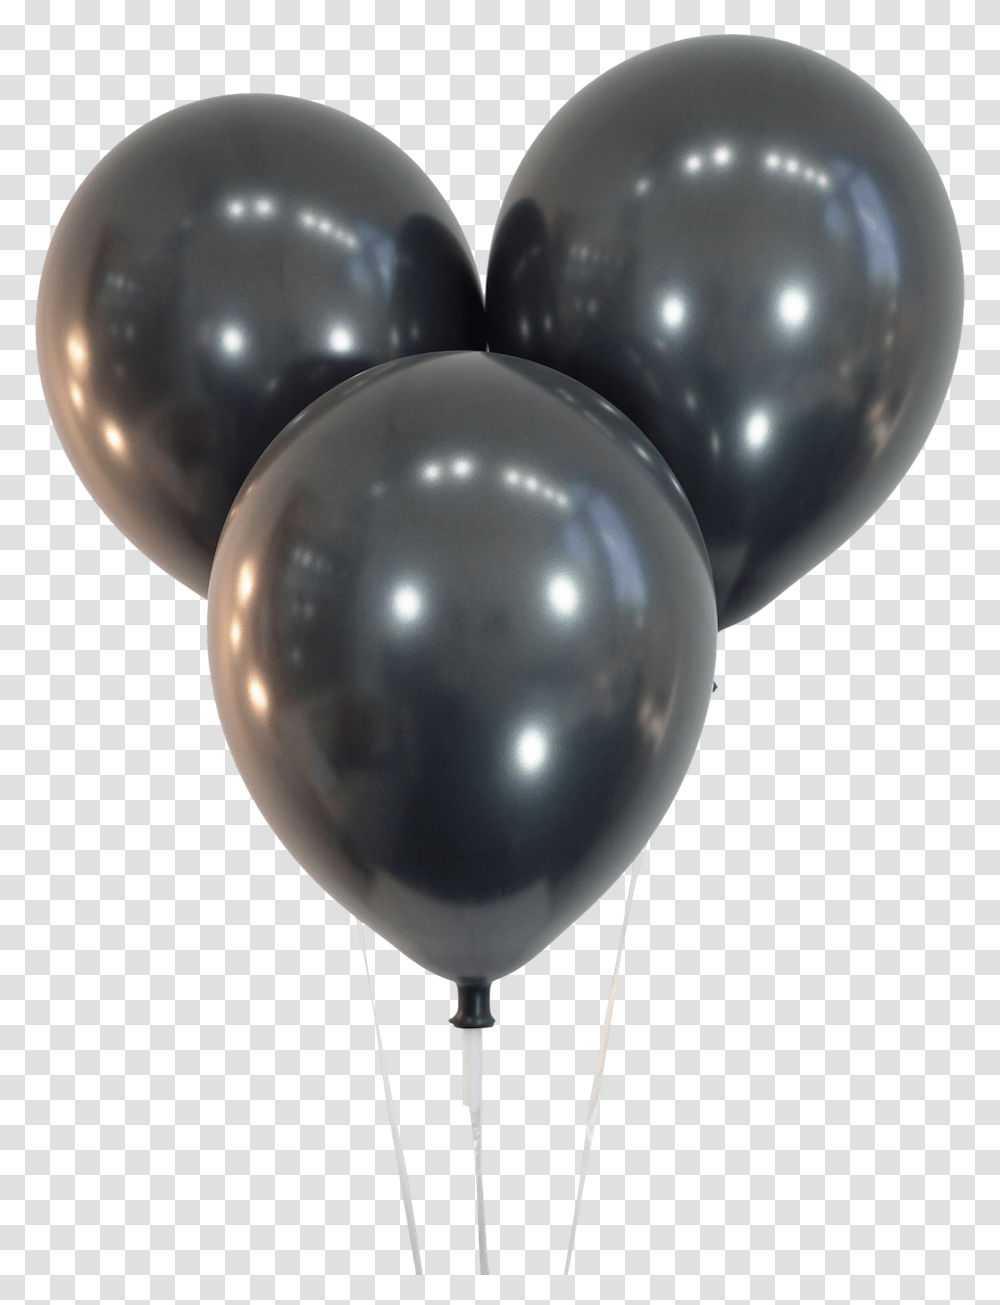 Metallic Black Balloons Black Metallic Balloons, Sphere Transparent Png